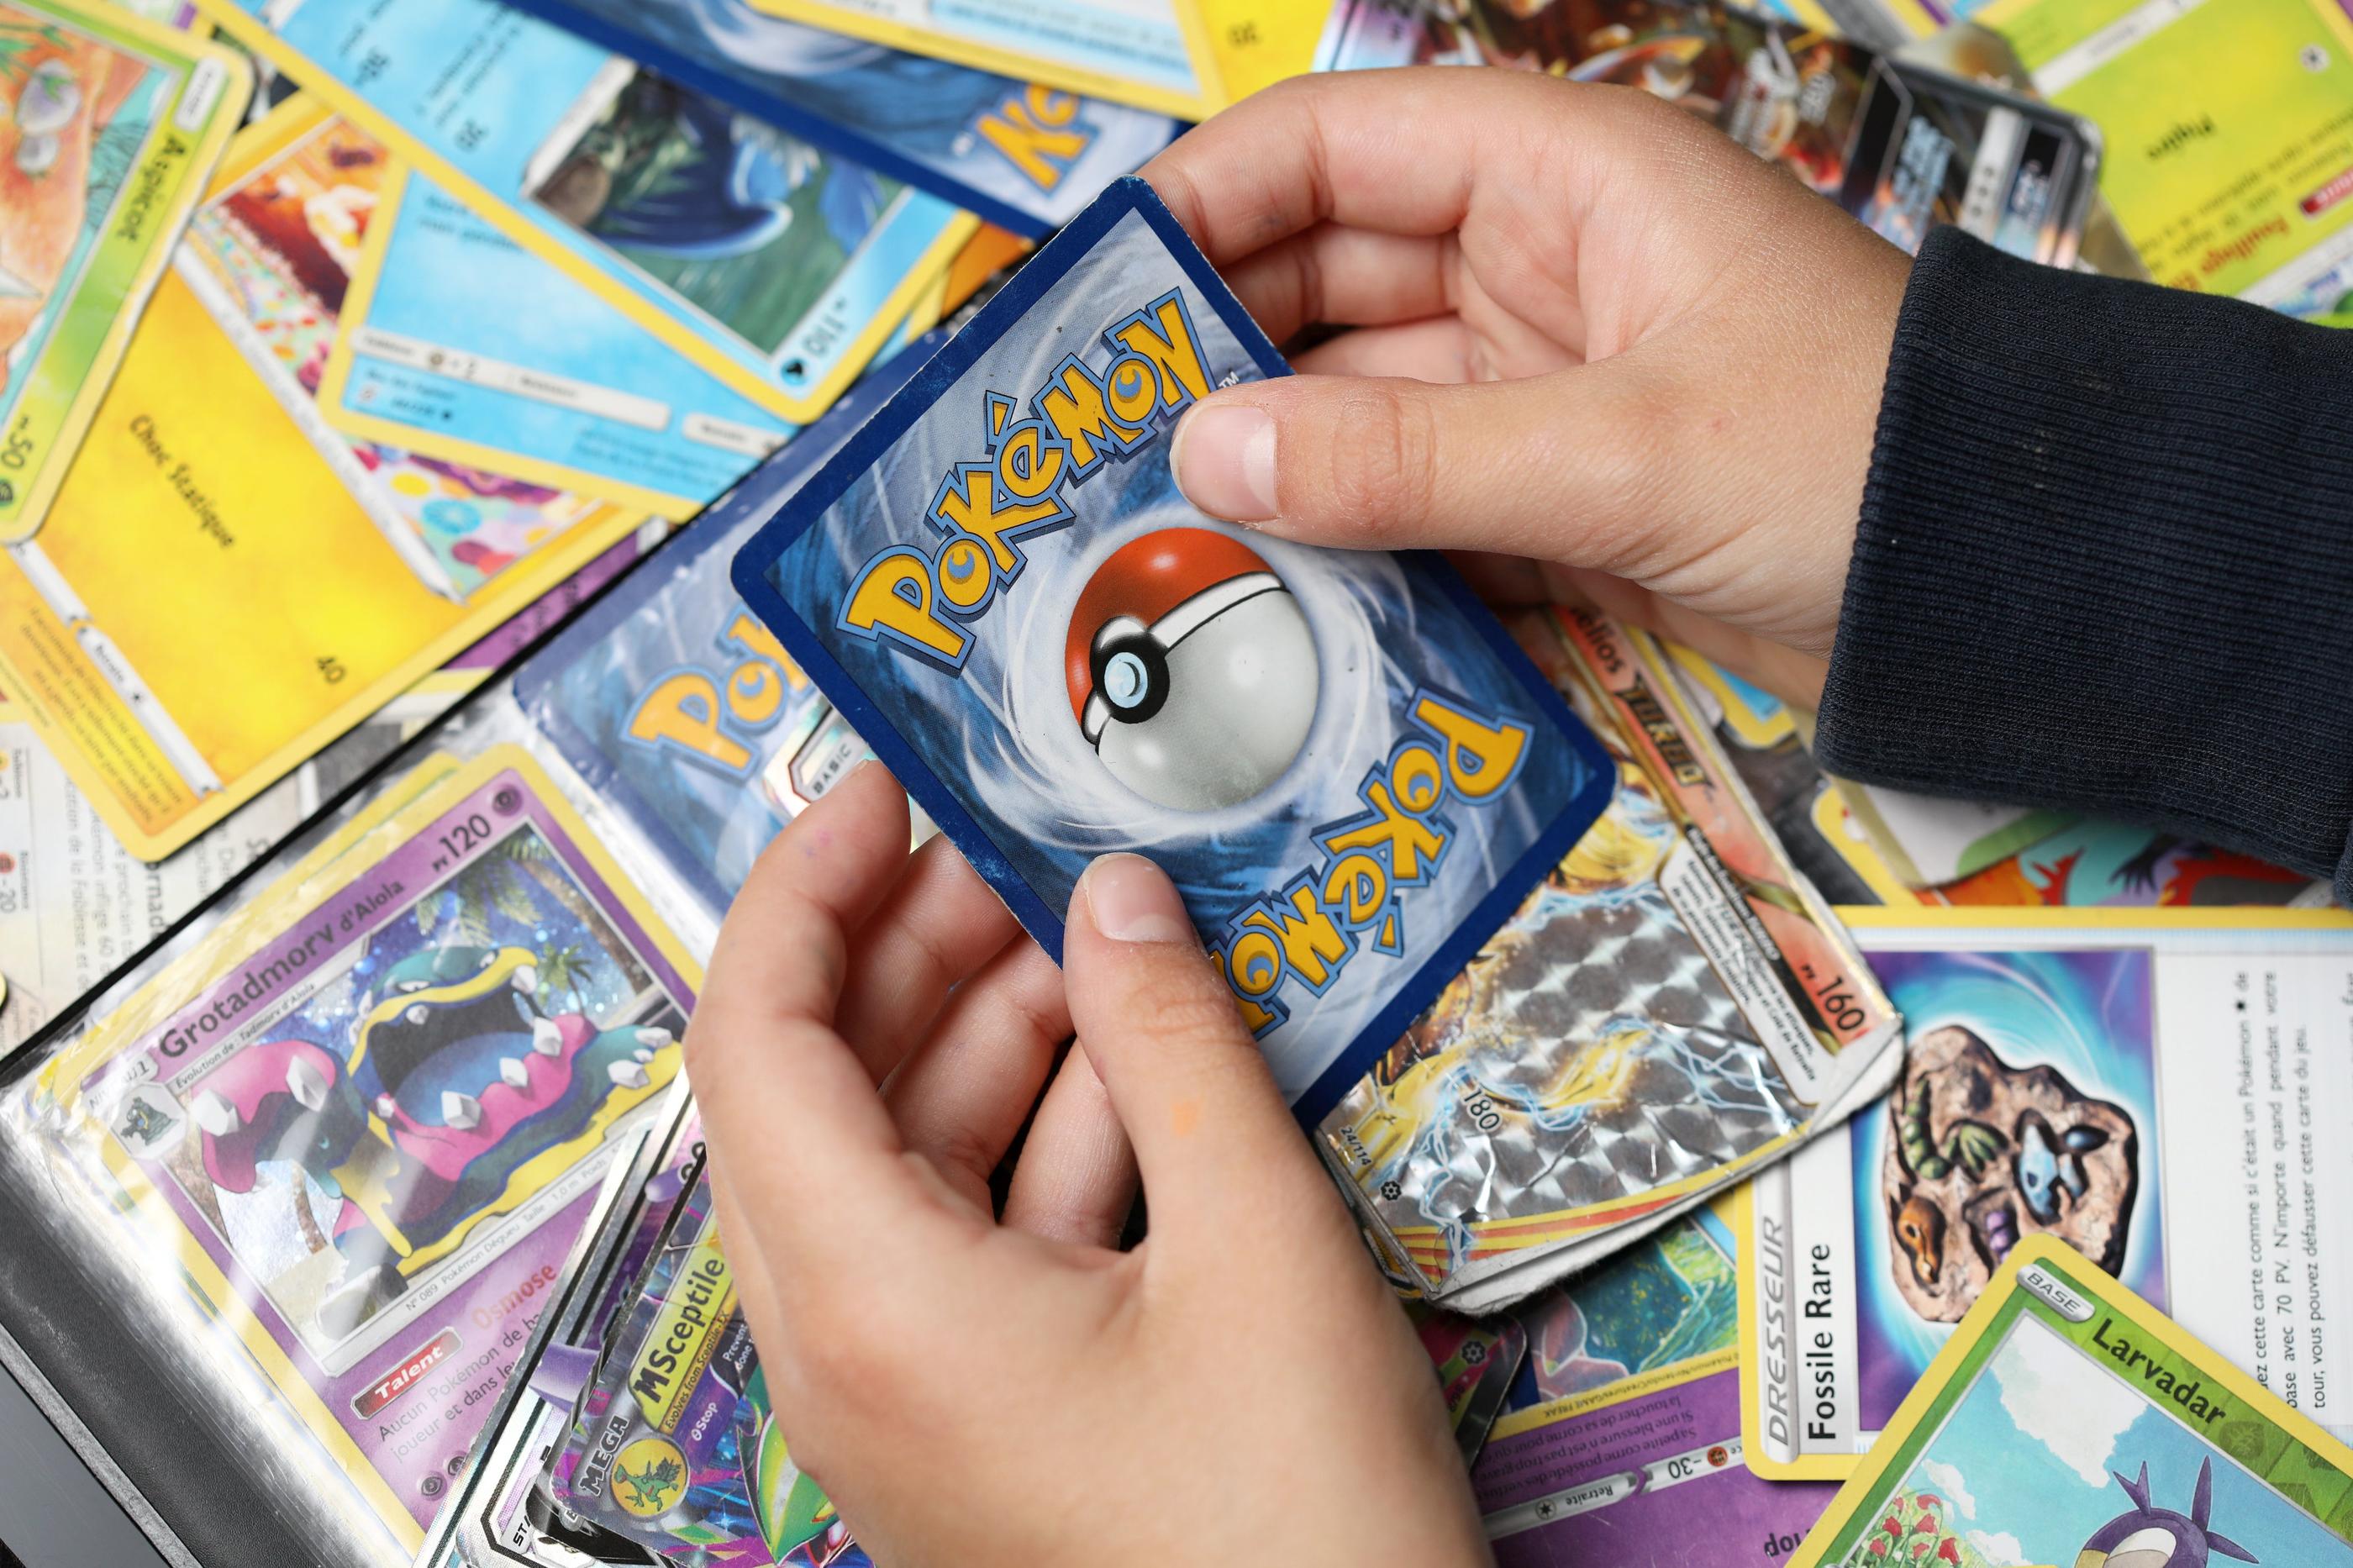 Selon l'influenceur et la scénographie, l'ouverture en live d'un paquet de jeux de cartes à collectionner Pokémon peut rapidement faire le buzz. (Illustration). LP/Arnaud Journois